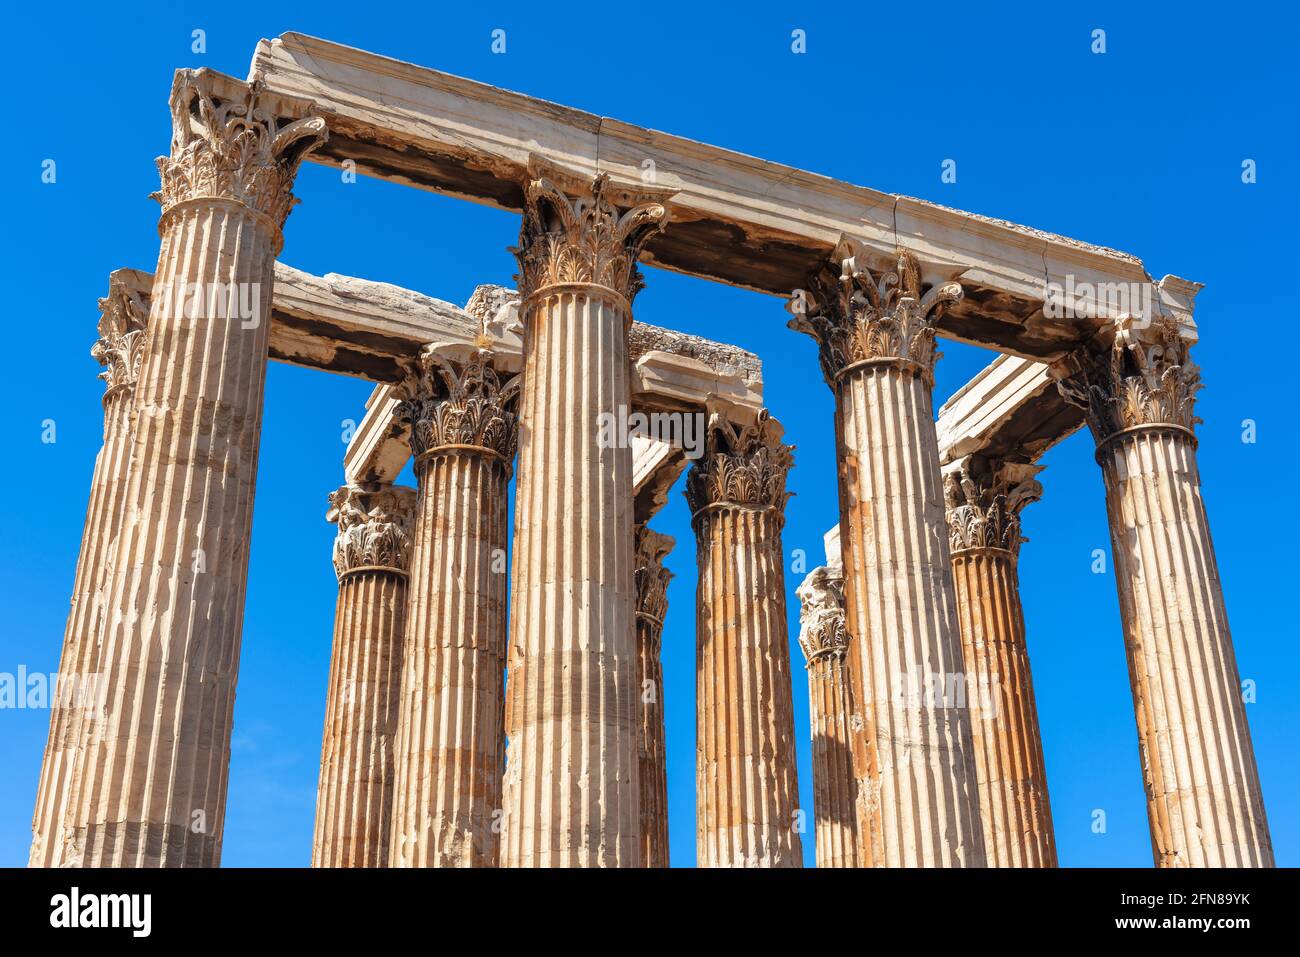 Antiker Tempel des olympischen Zeus, Athen, Griechenland. Korinthische Säulen sind Überreste des klassischen griechischen Gebäudes. Dieses alte Denkmal ist das berühmte Wahrzeichen VON A Stockfoto